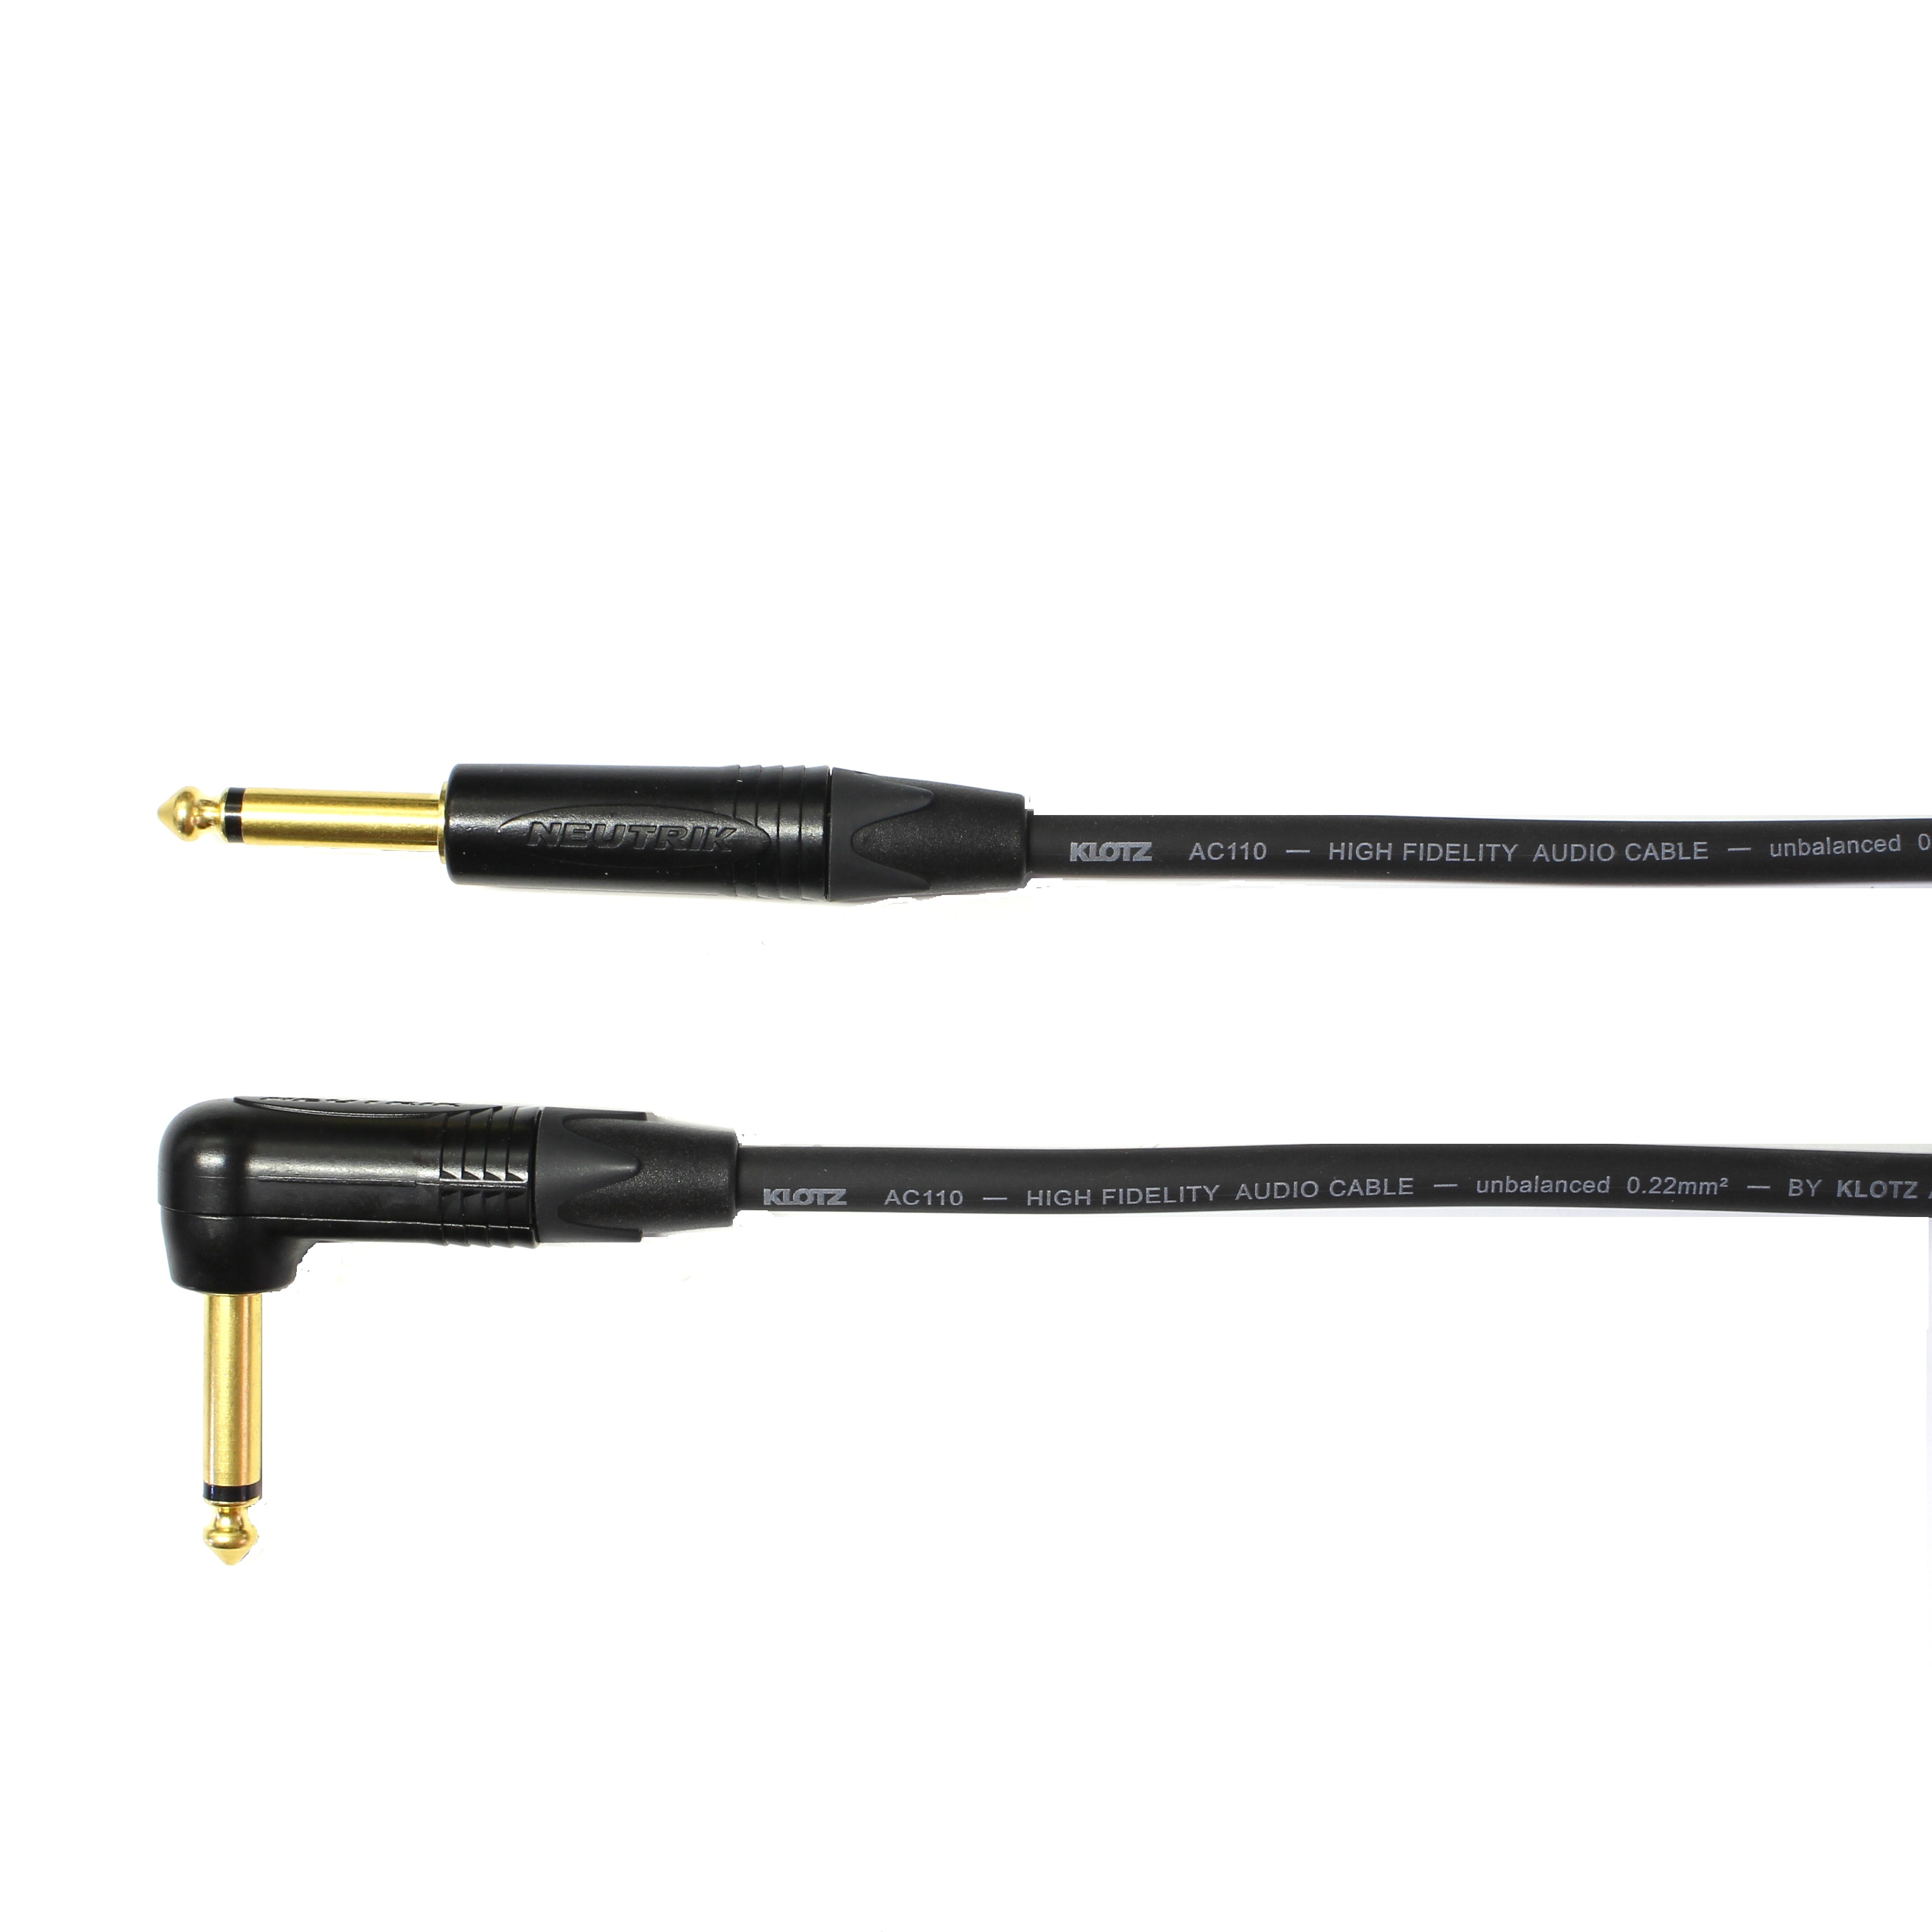 Kytarový kabel Jack 6,3 mono přímý/ Jack 6,3 mono úhlový, 4 m, AC110